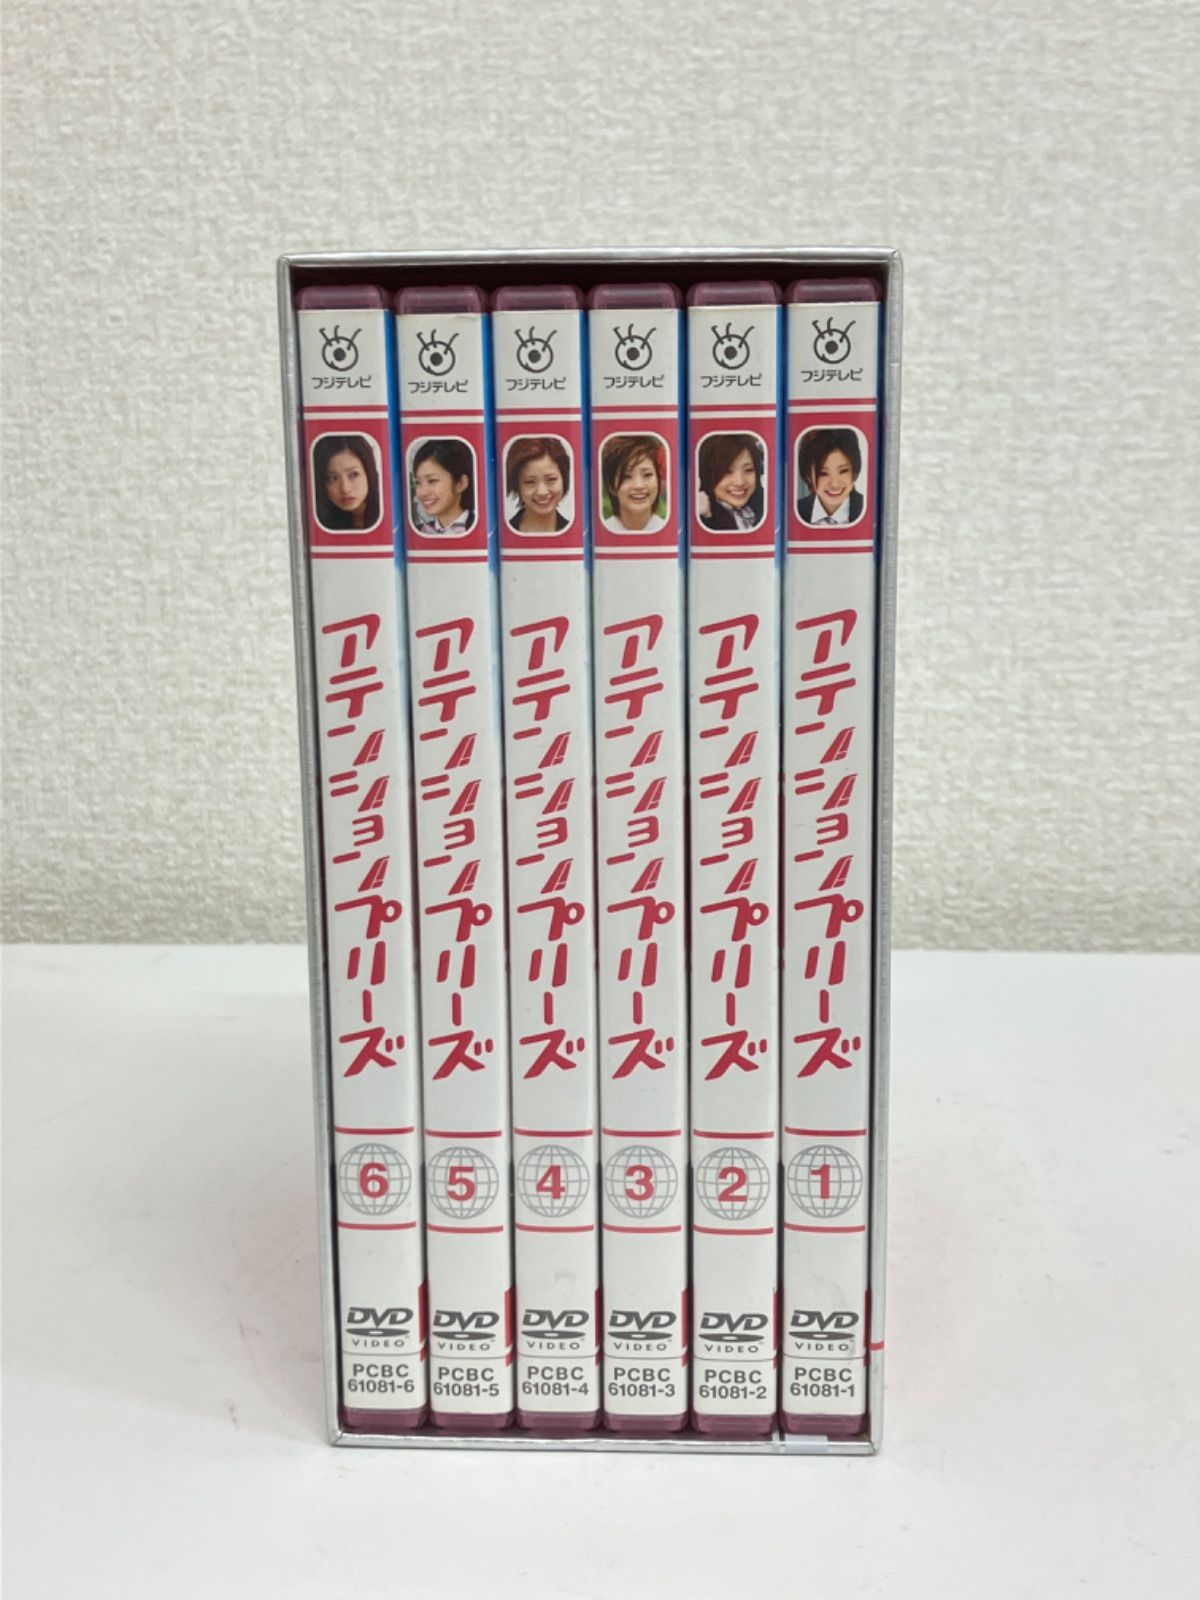 アテンションプリーズ DVD-BOX 6枚組 - メルカリ